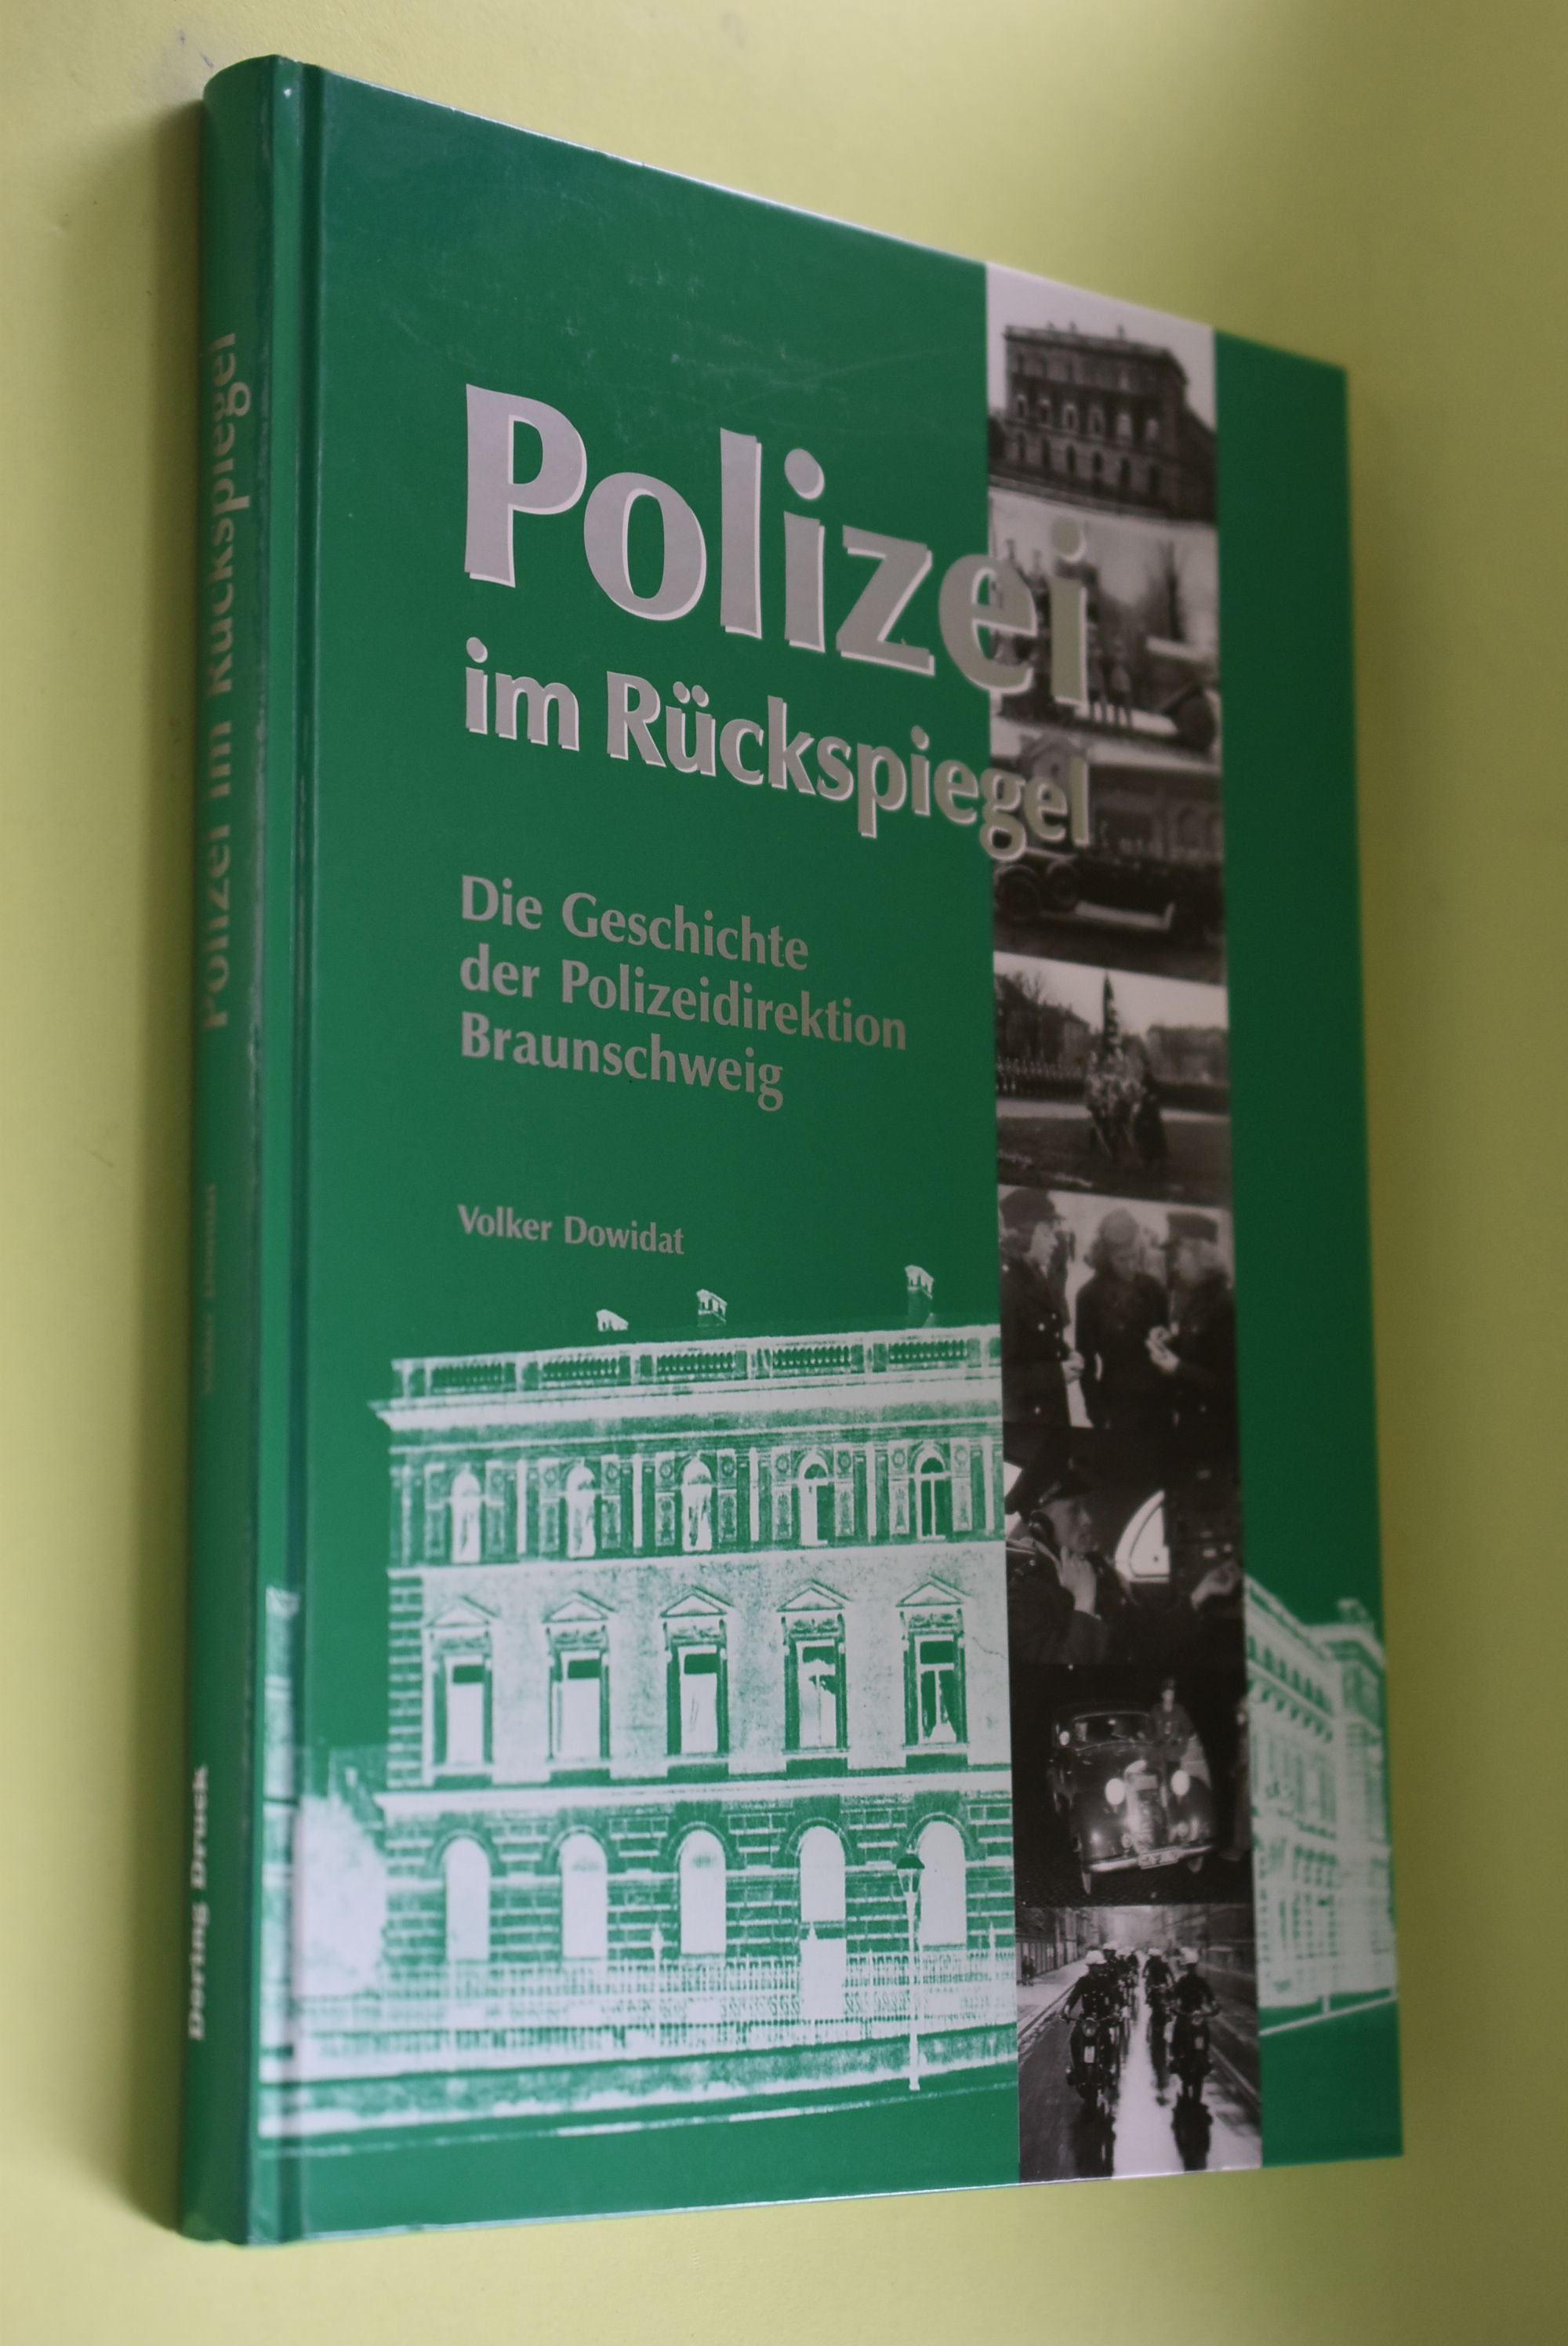 Polizei im Rückspiegel : die Geschichte der Polizeidirektion Braunschweig. - Dowidat, Volker